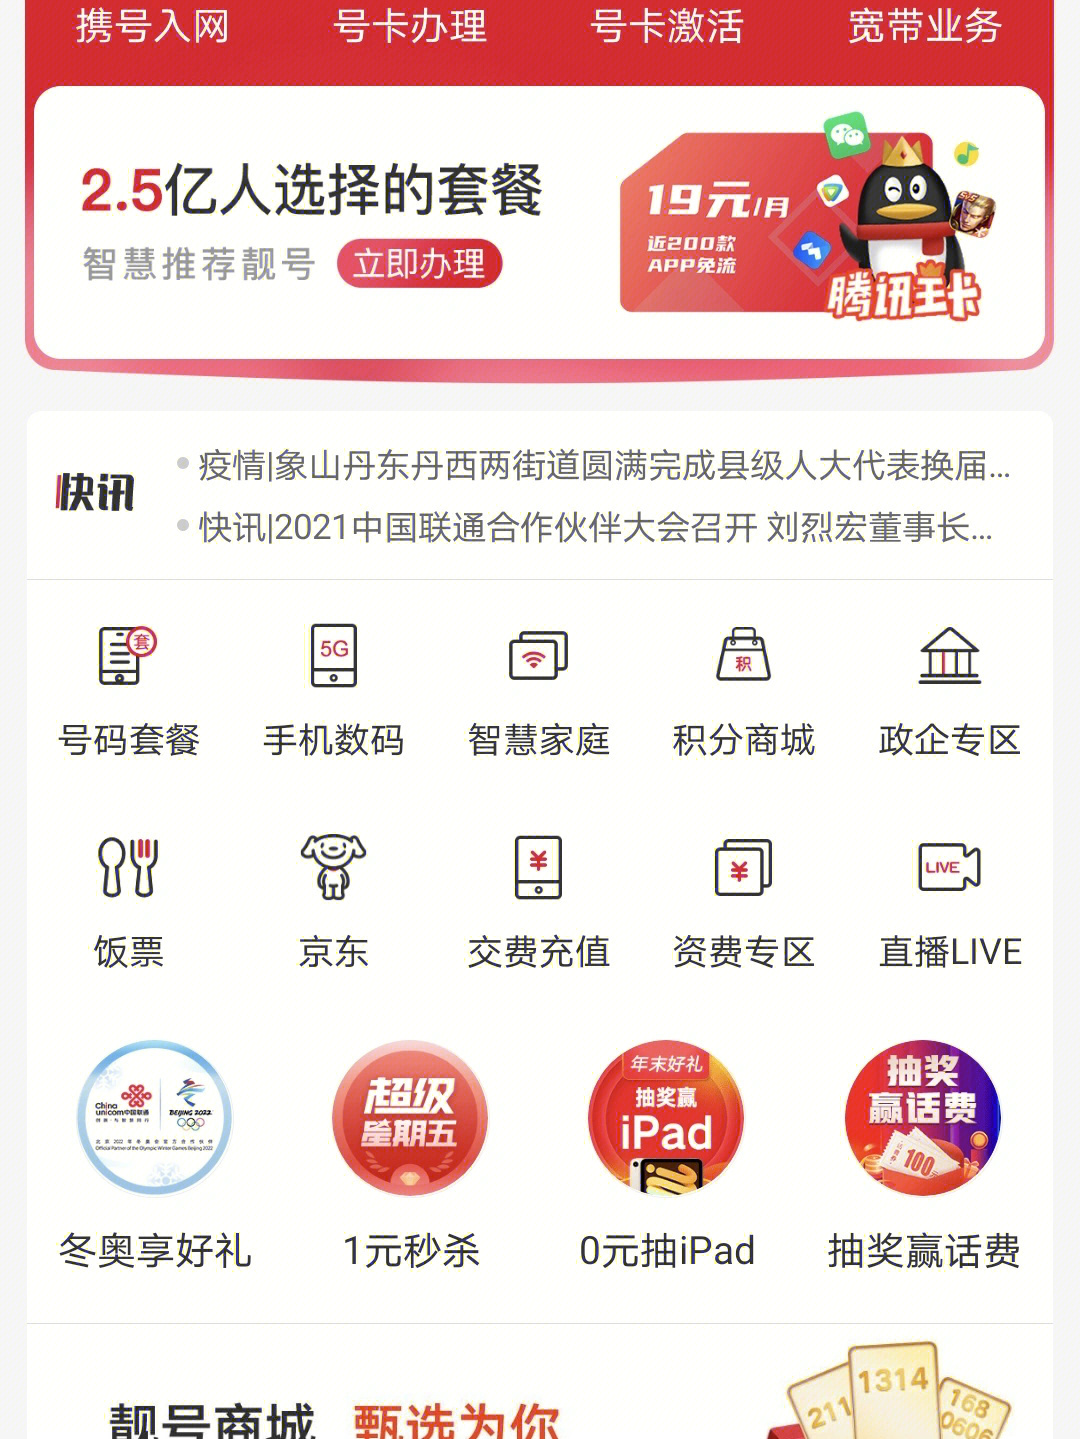 联通app   薅羊毛  下载中国联通,首页饭票点进去,找到话费券新人